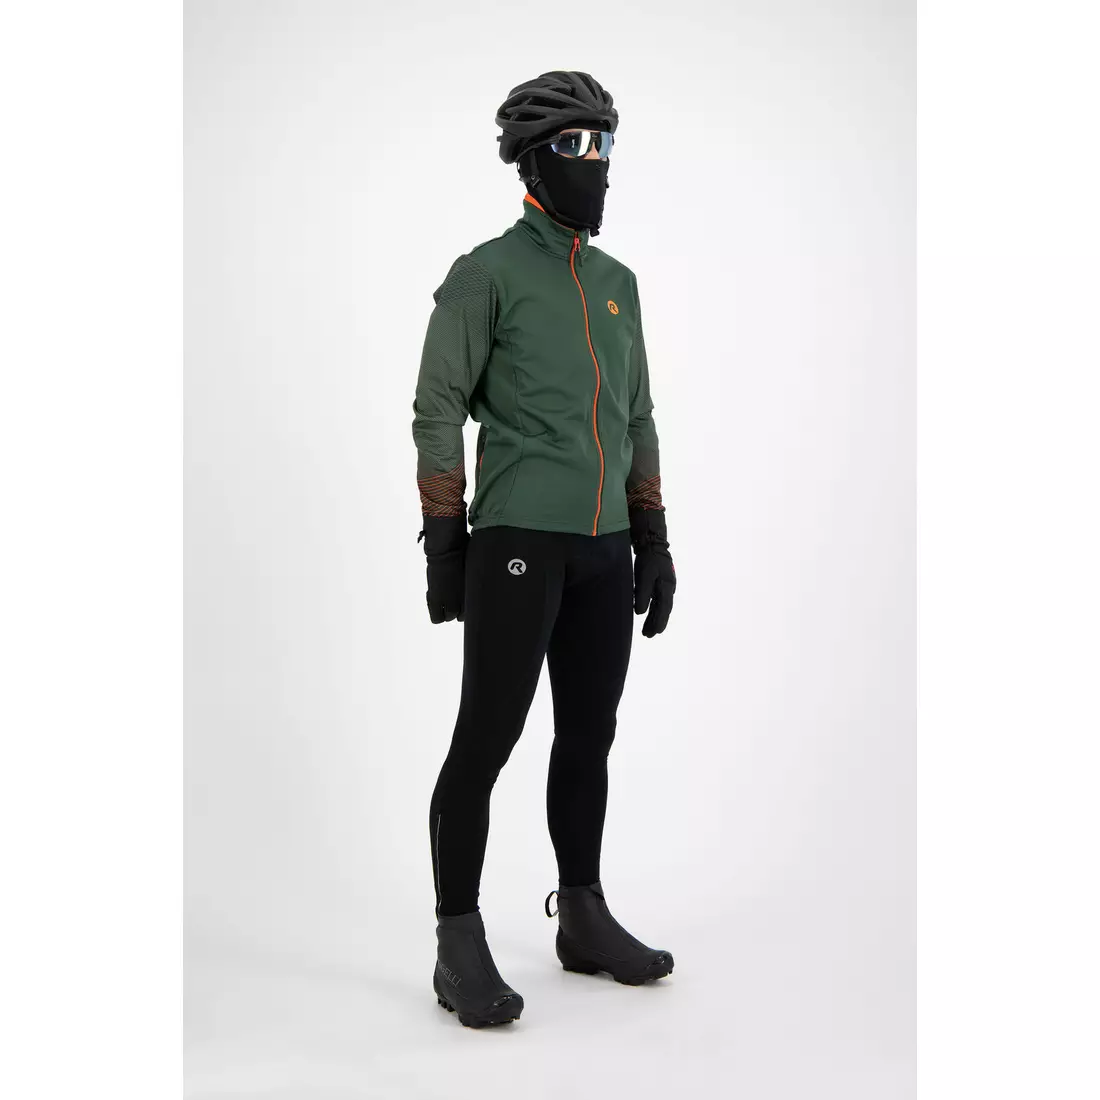 ROGELLI WIRE pánska zimná softshellová bunda na bicykel, zelená/oranžová 